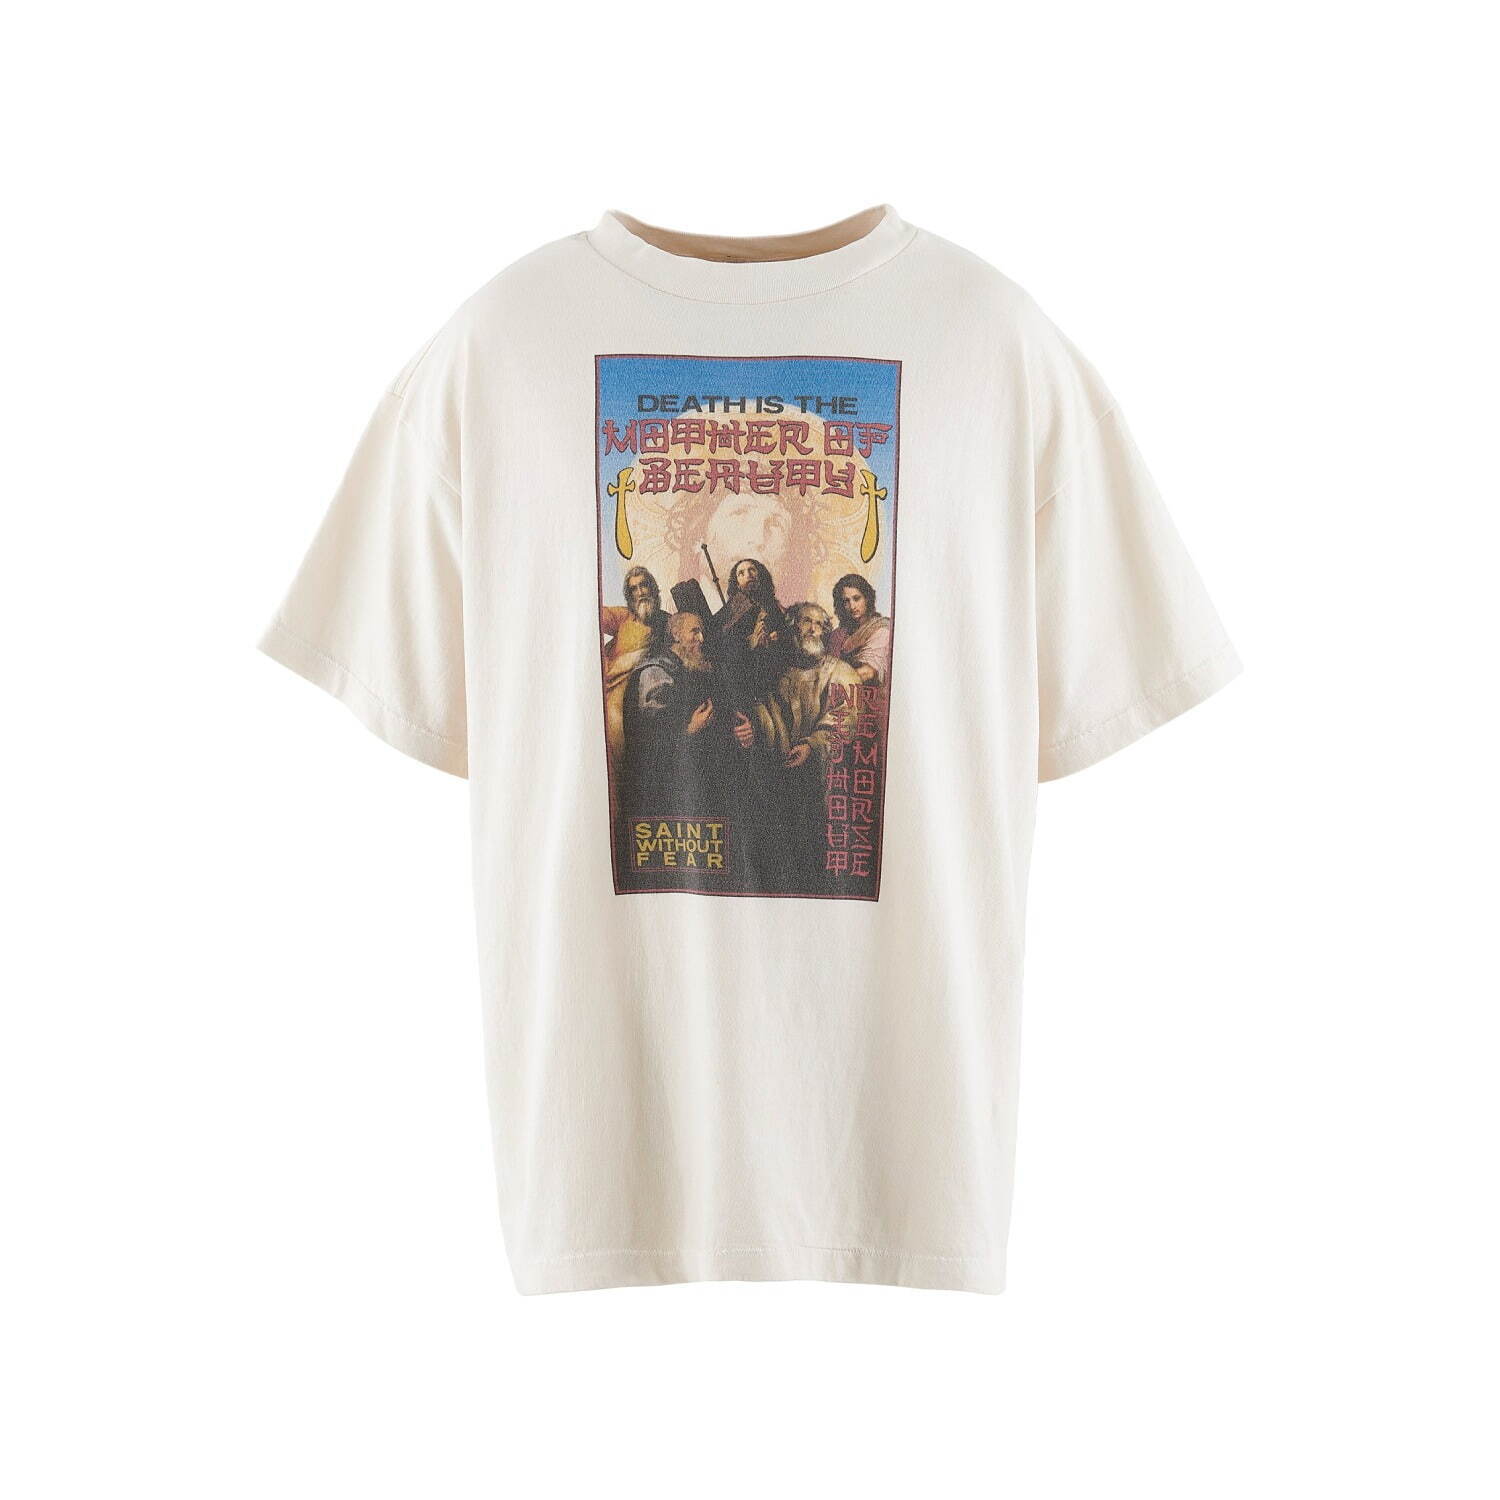 RK Tシャツ 26,400円